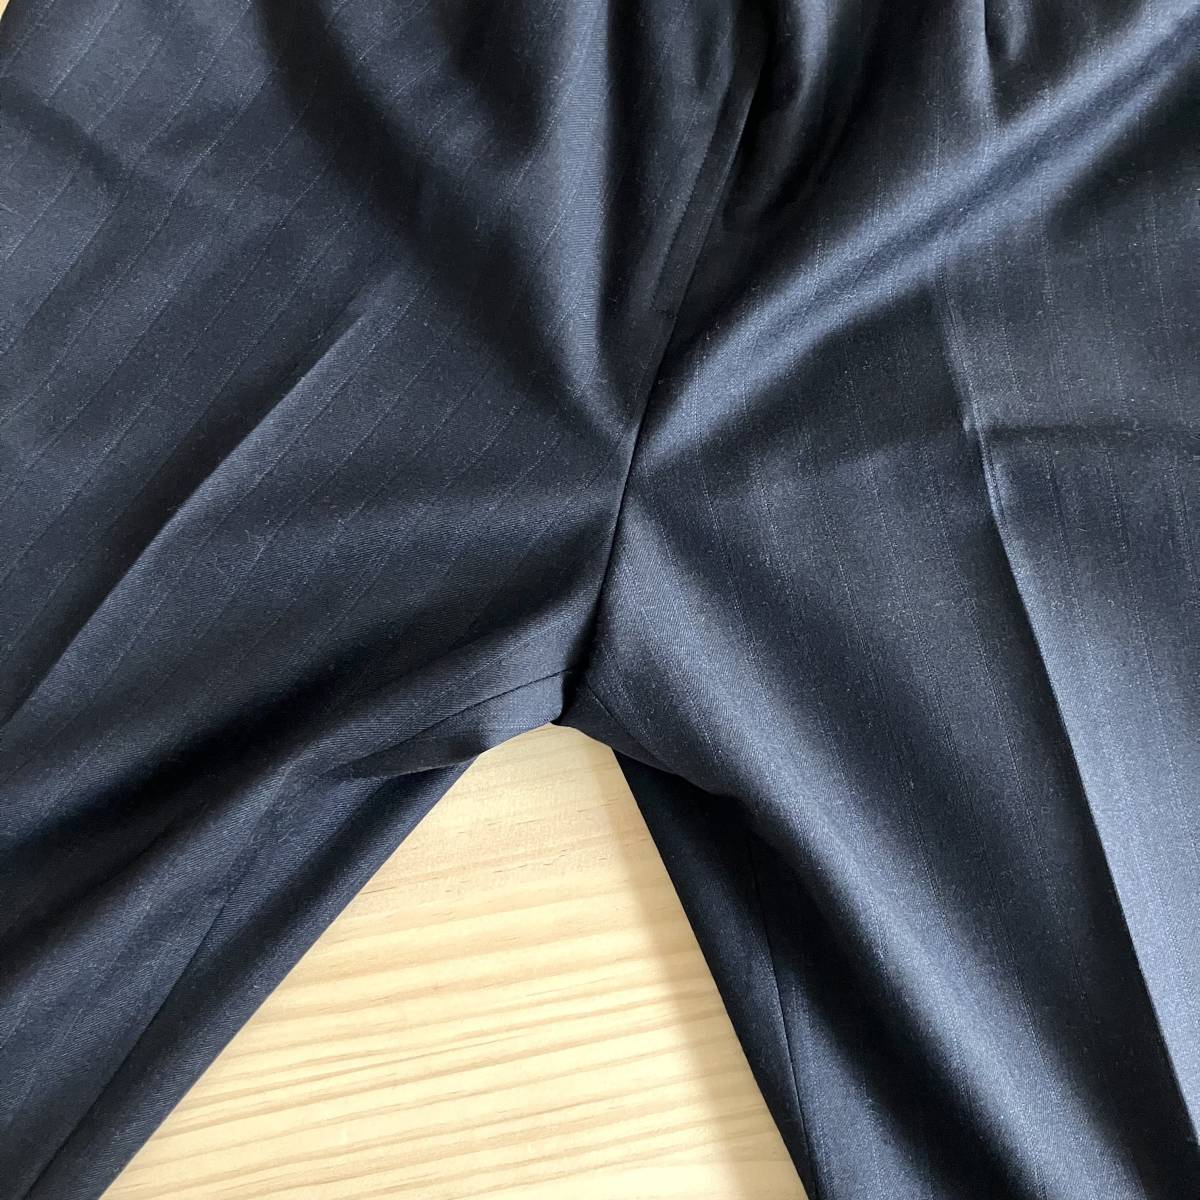 # прекрасный товар # Leilian шерсть 100% # брючный костюм # 13 # большой размер # сделано в Японии # Италия Zegna фирма специальный заказ ткань # /